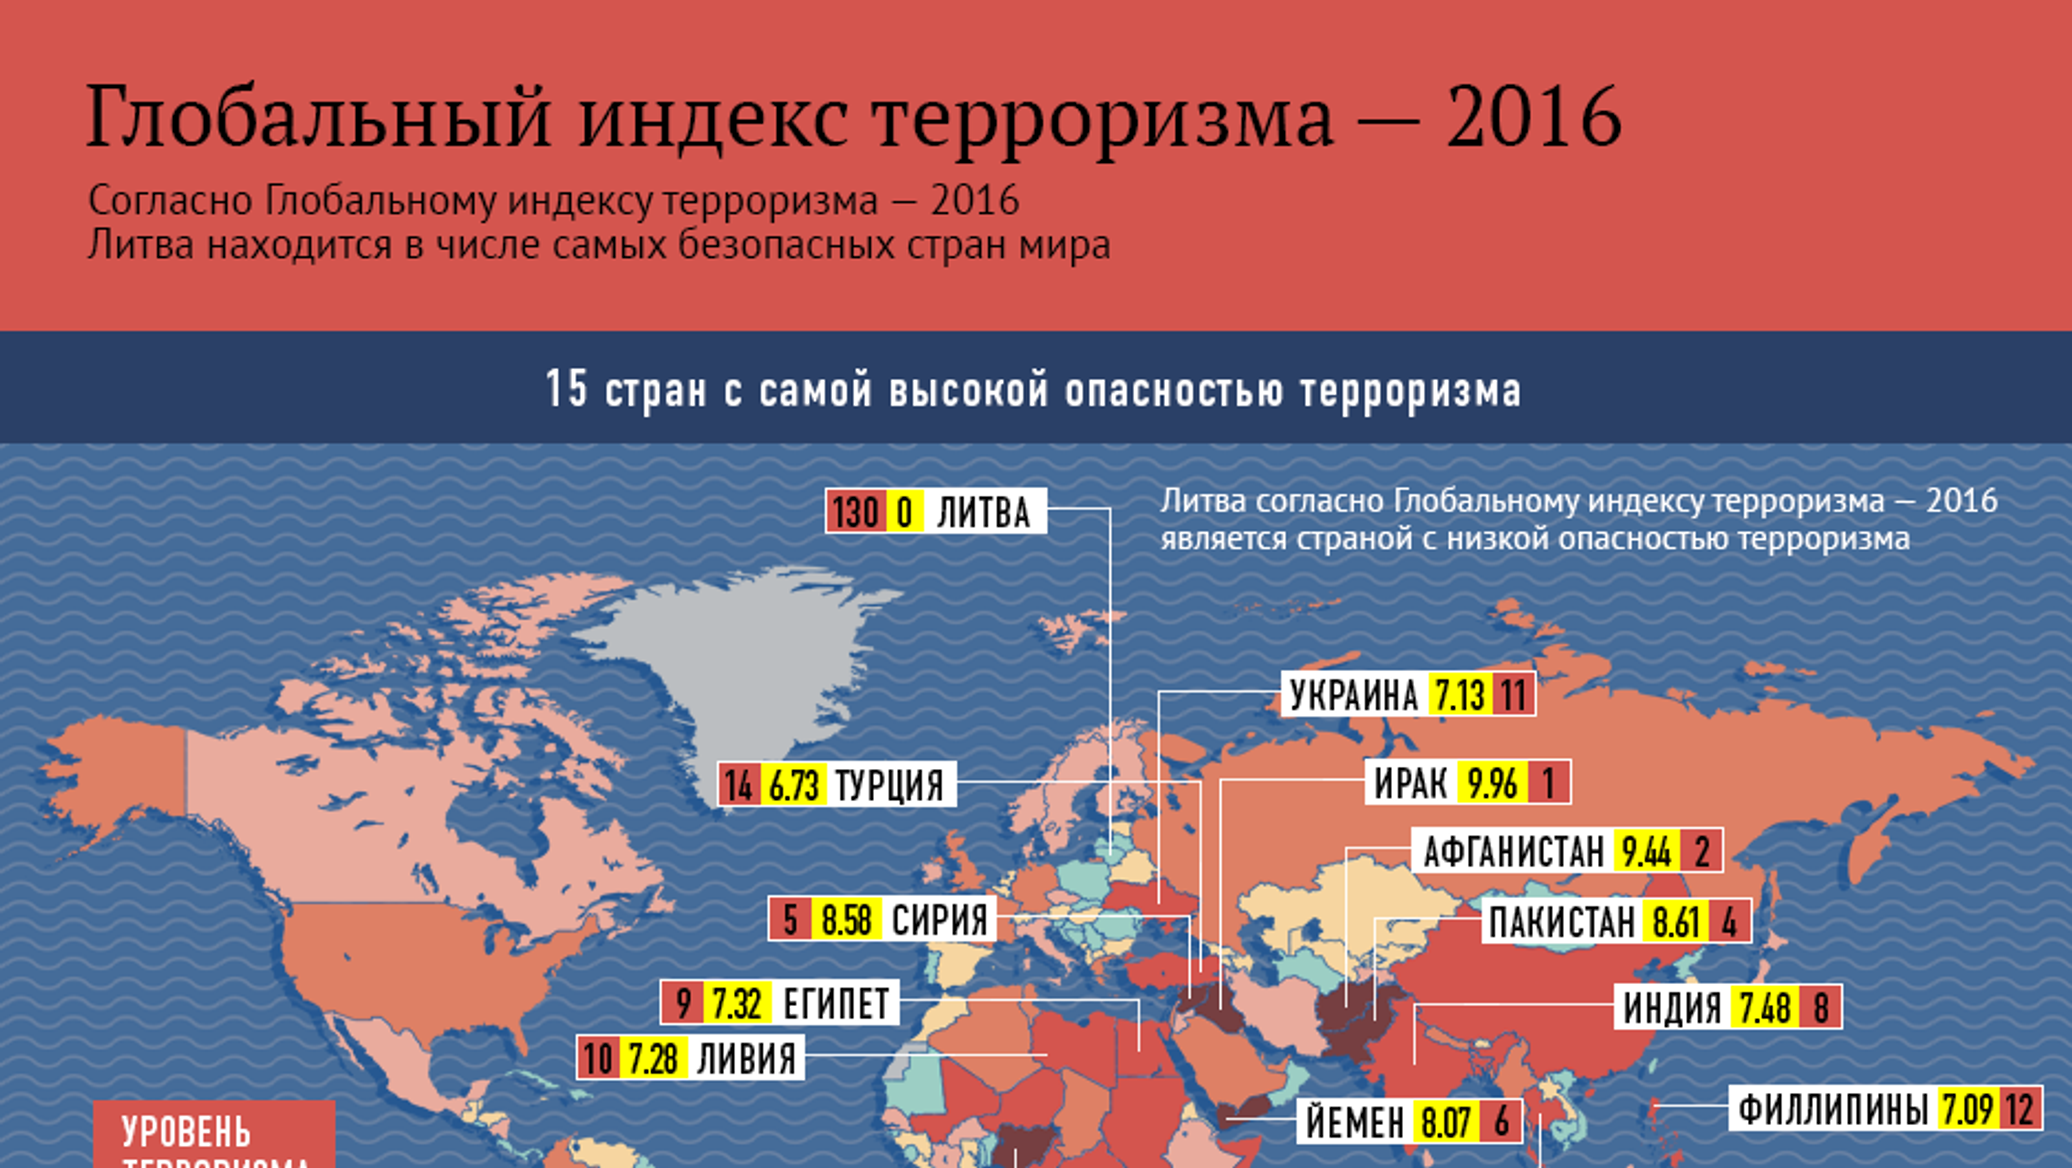 Последние террористические акты в россии 10 лет. Рейтинг стран по уровню терроризма. Статистика преступности по странам.